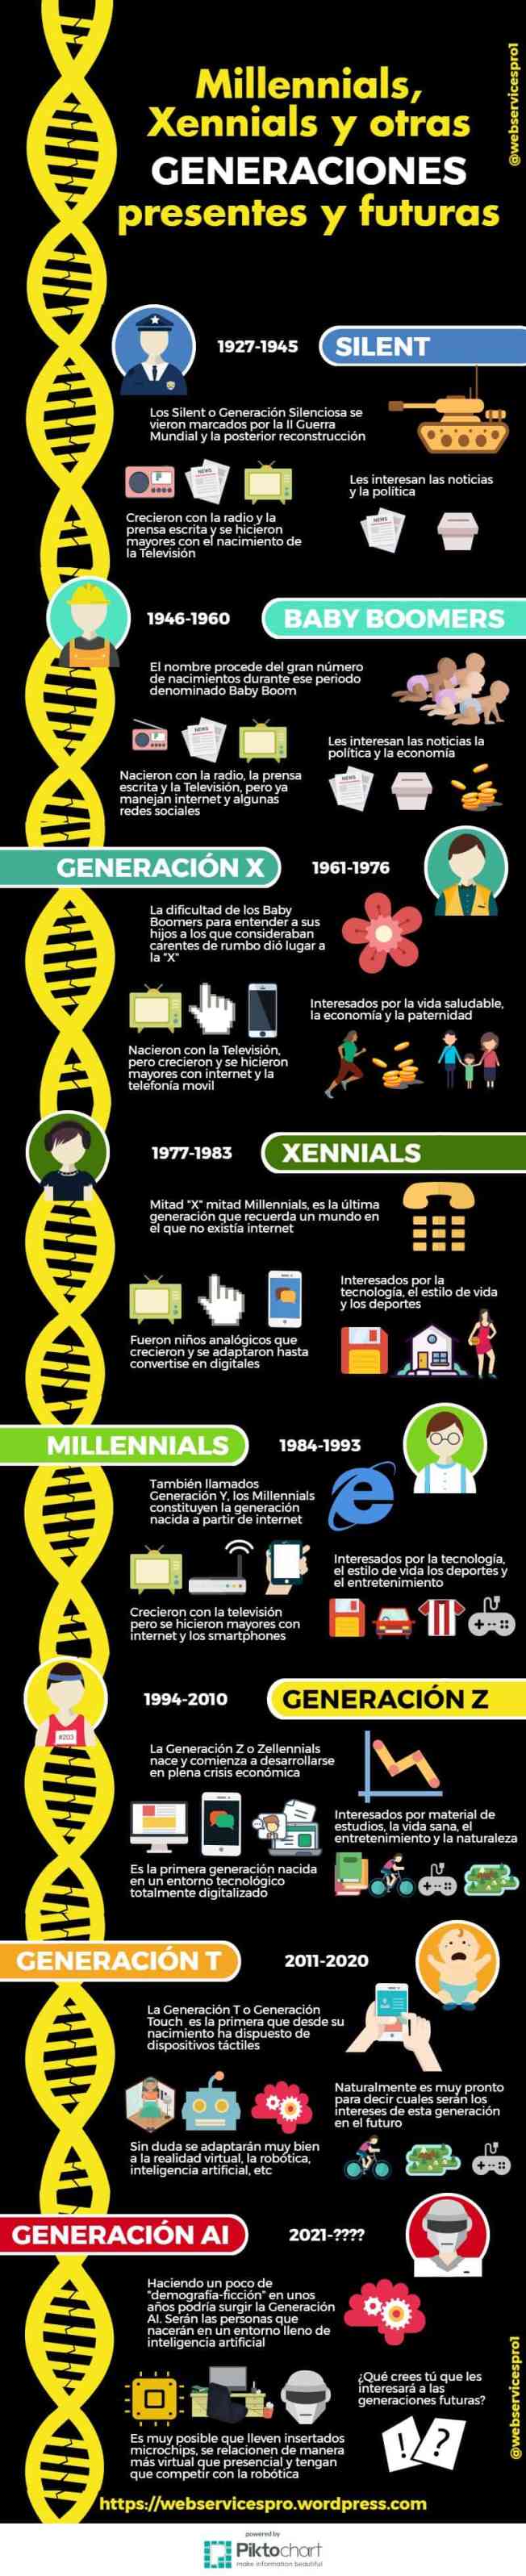 Millennials Xennials y otras generaciones presentes y futuras